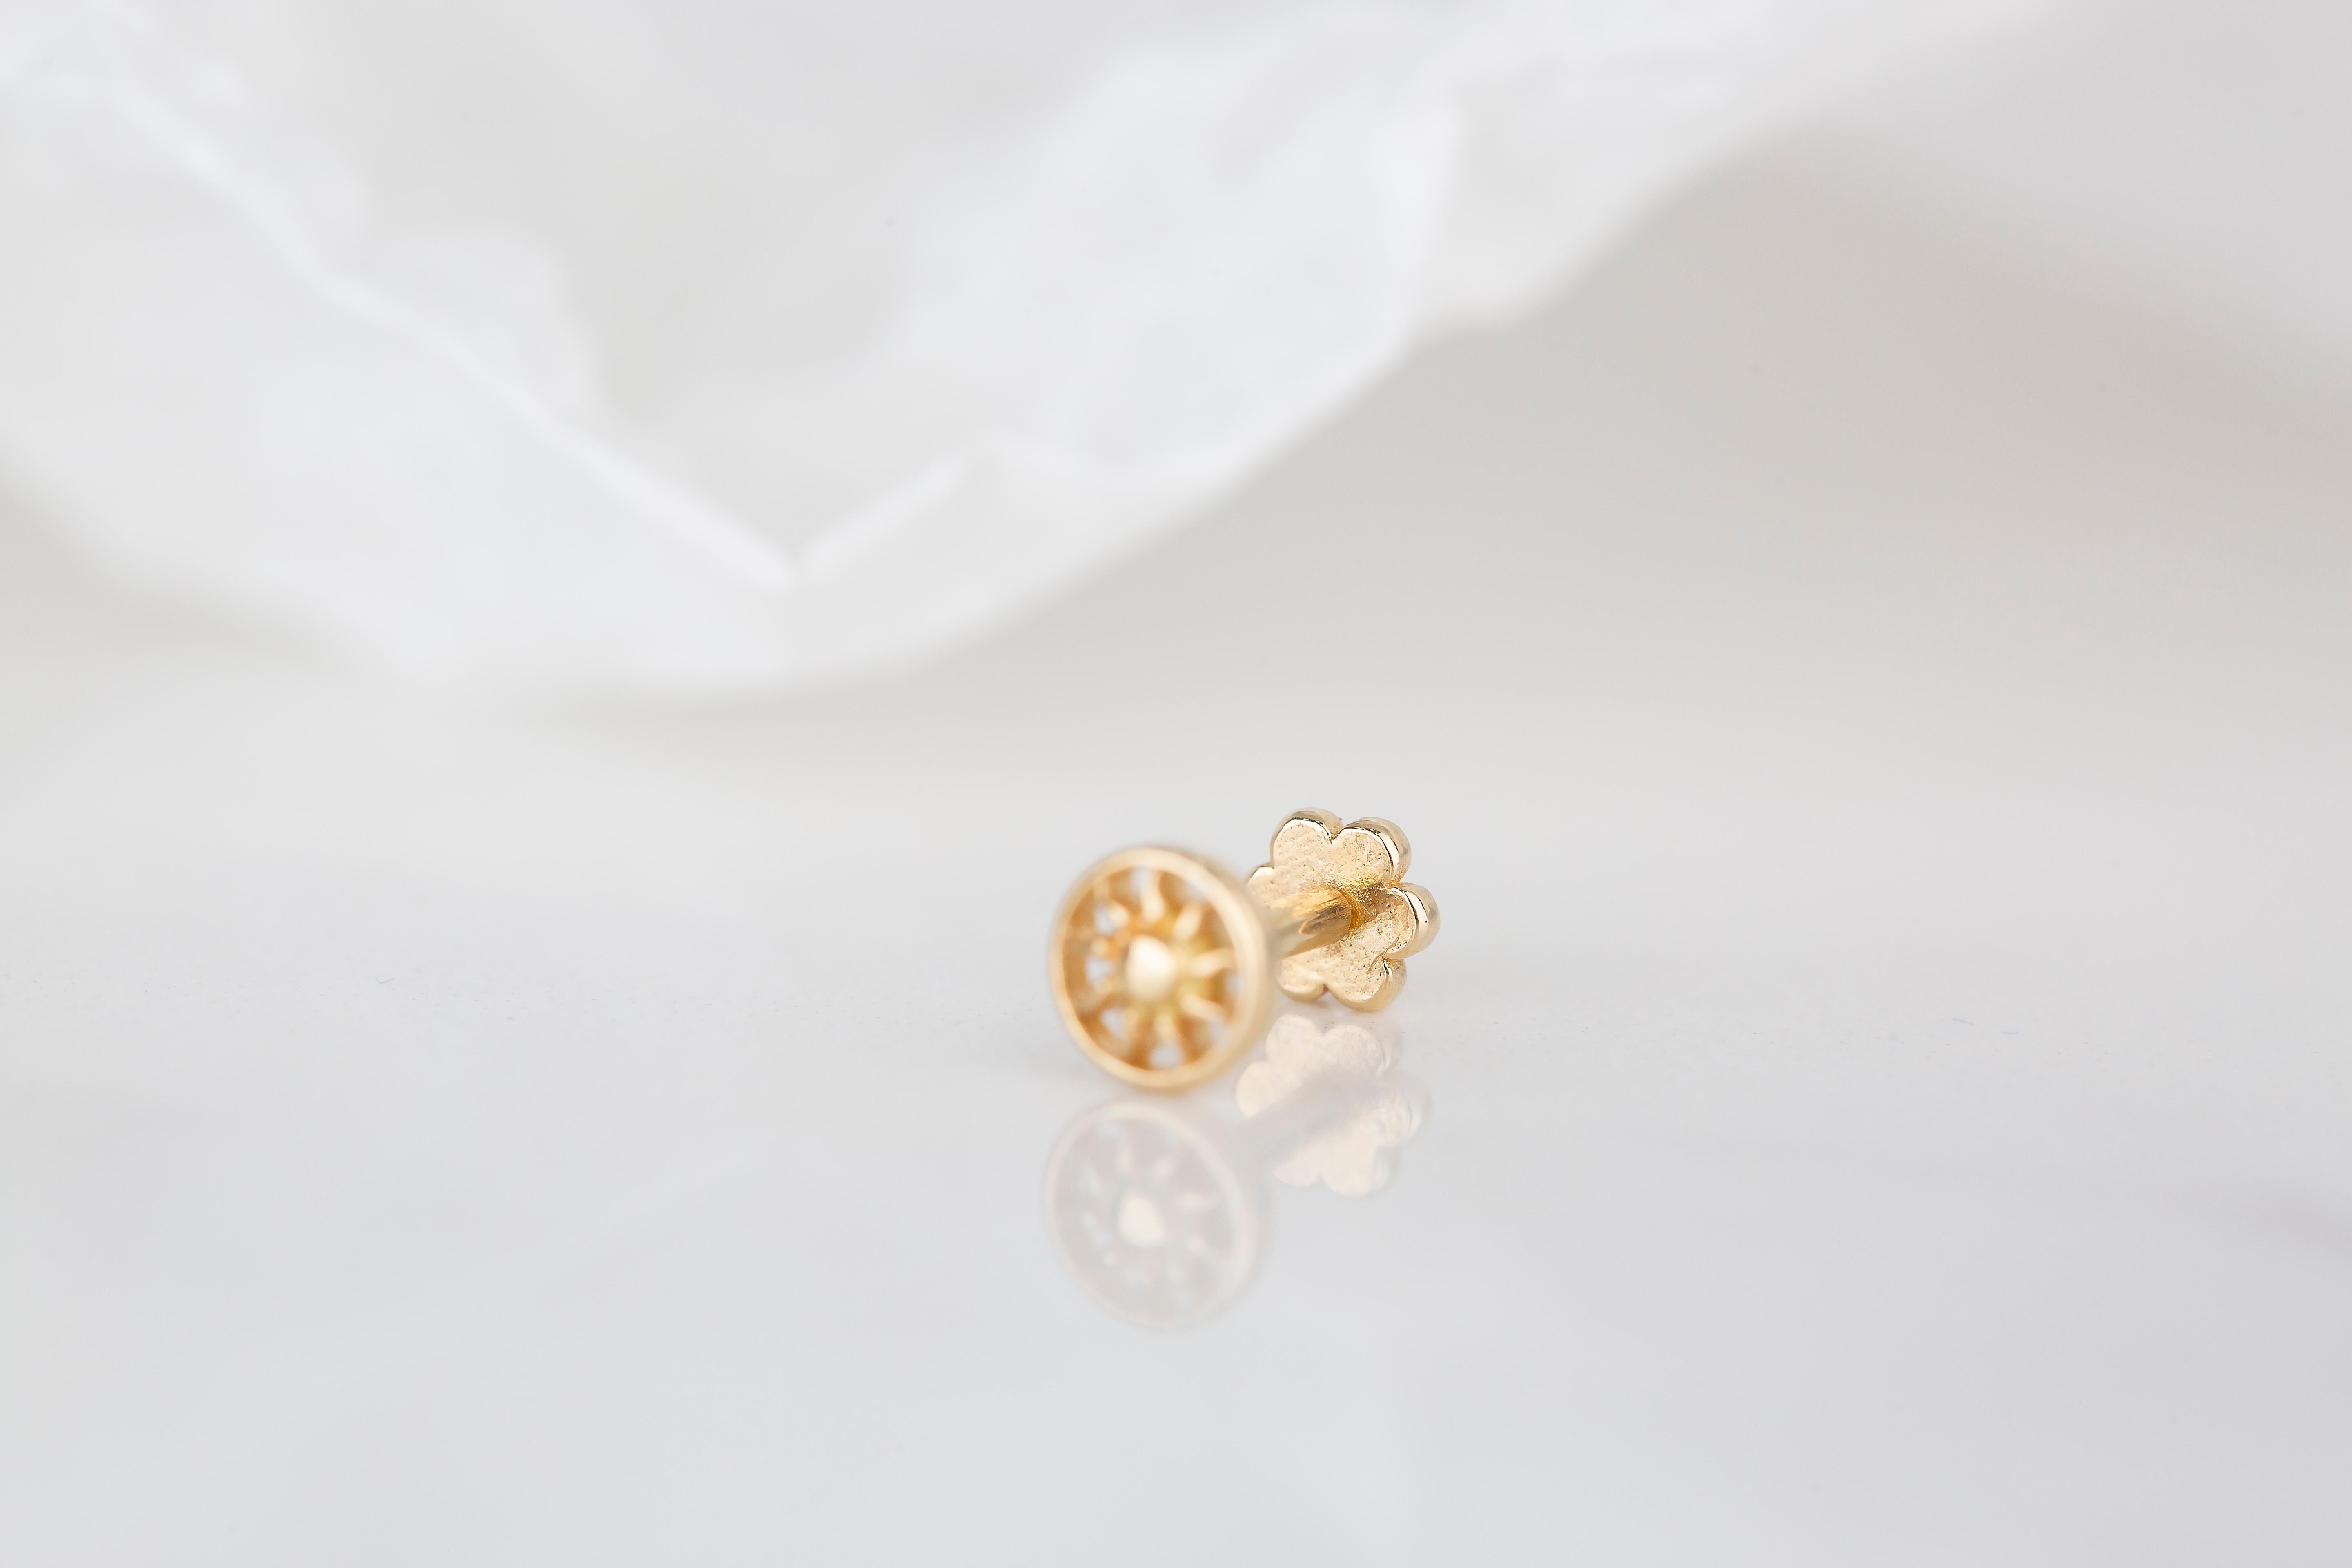 Women's 14K Gold Small Daisy Piercing, Cute Daisy Flower Gold Stud Earring For Sale